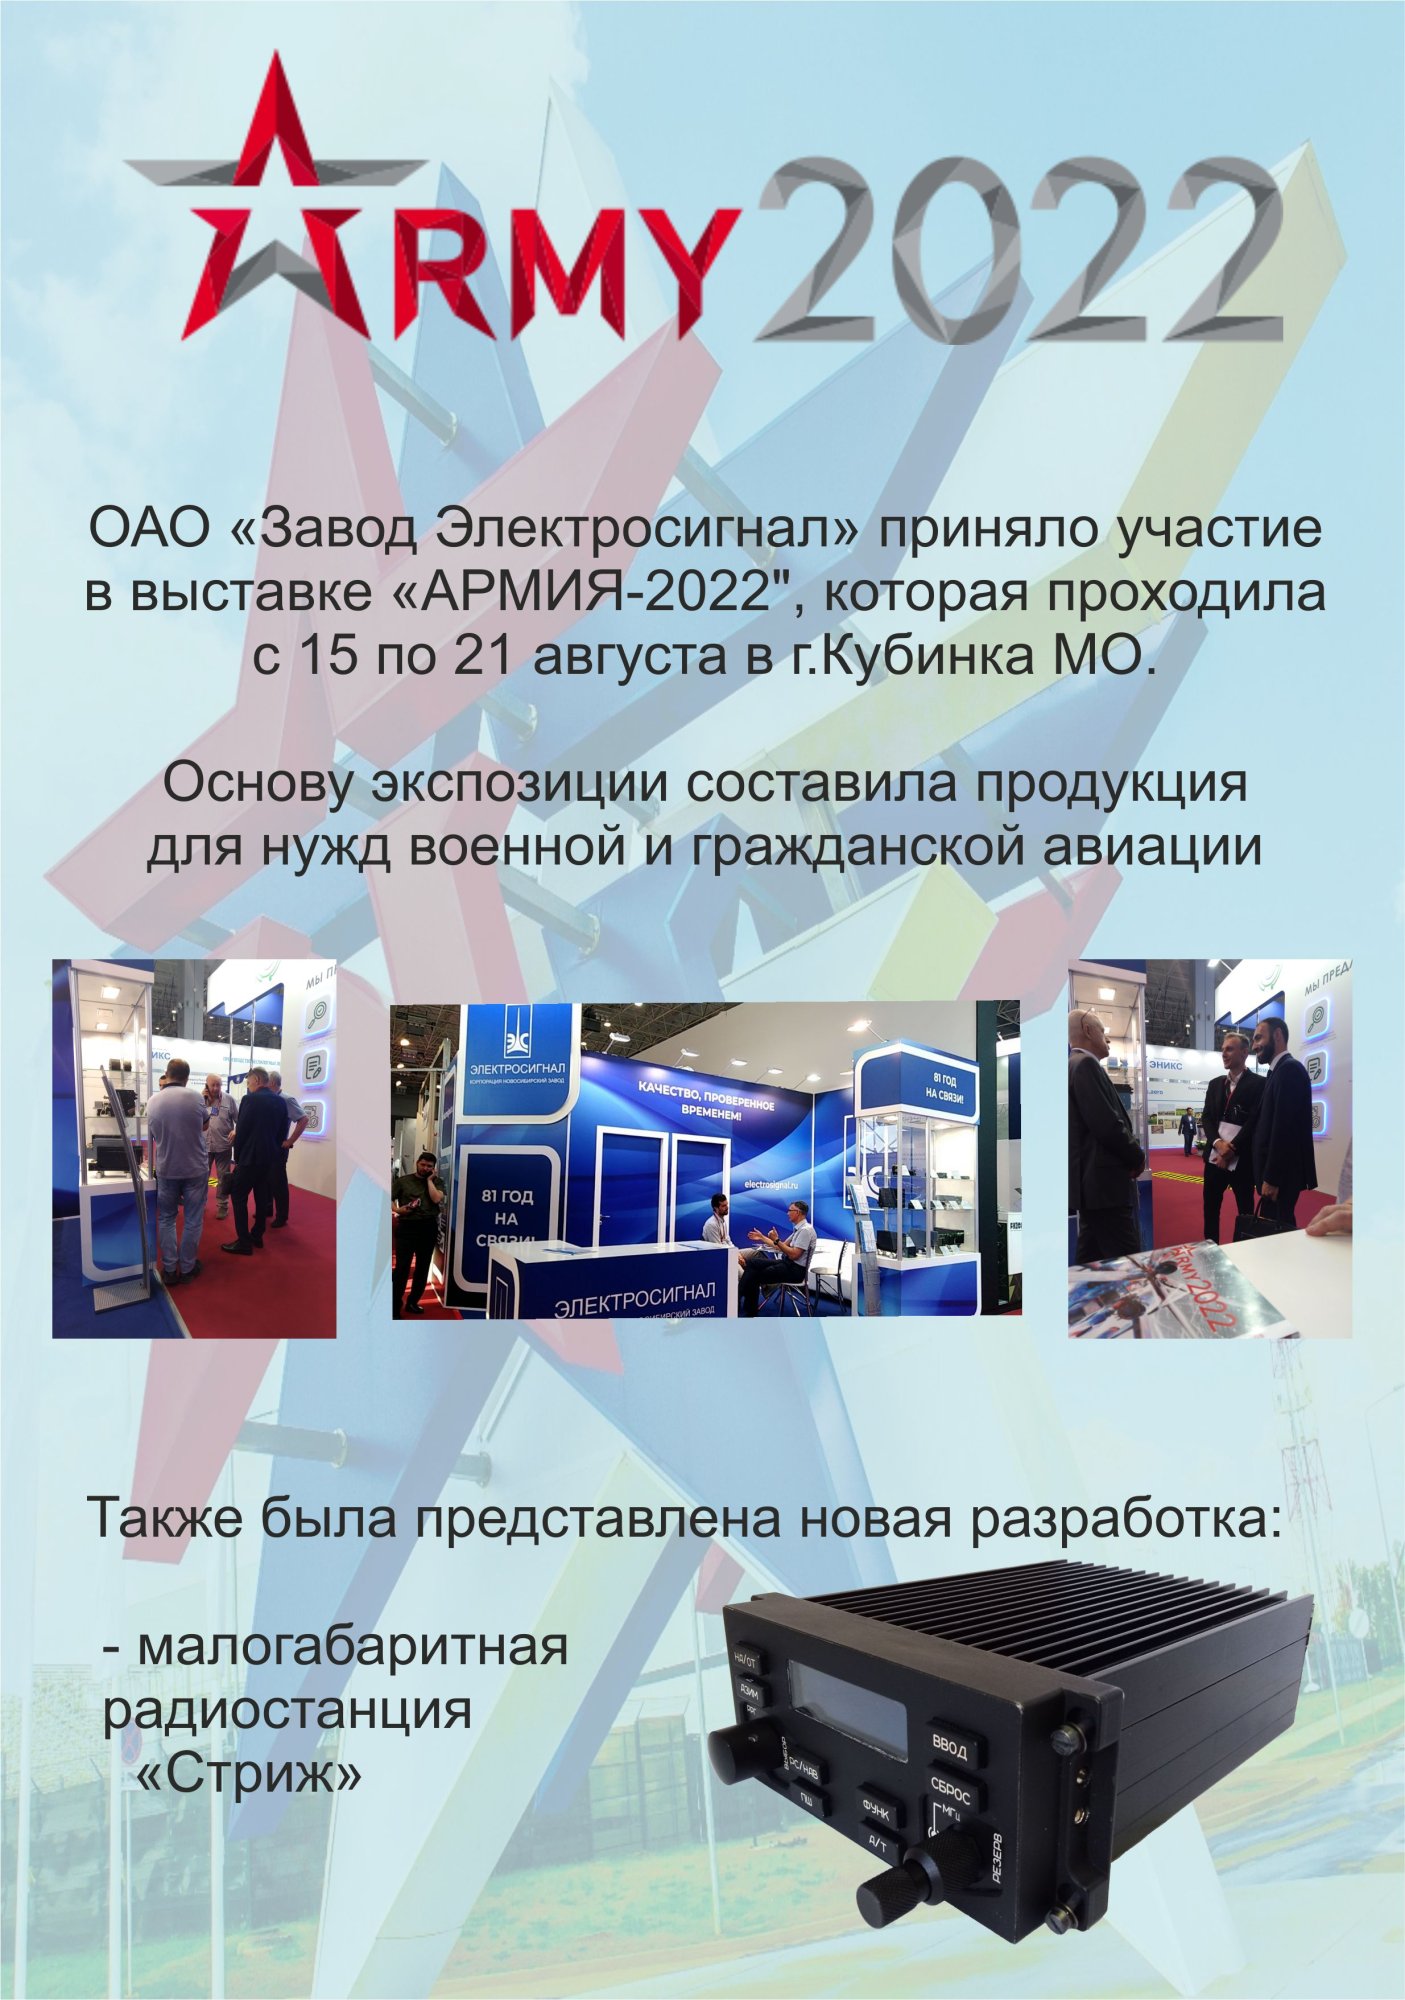 Итоги выставки Армия-2022